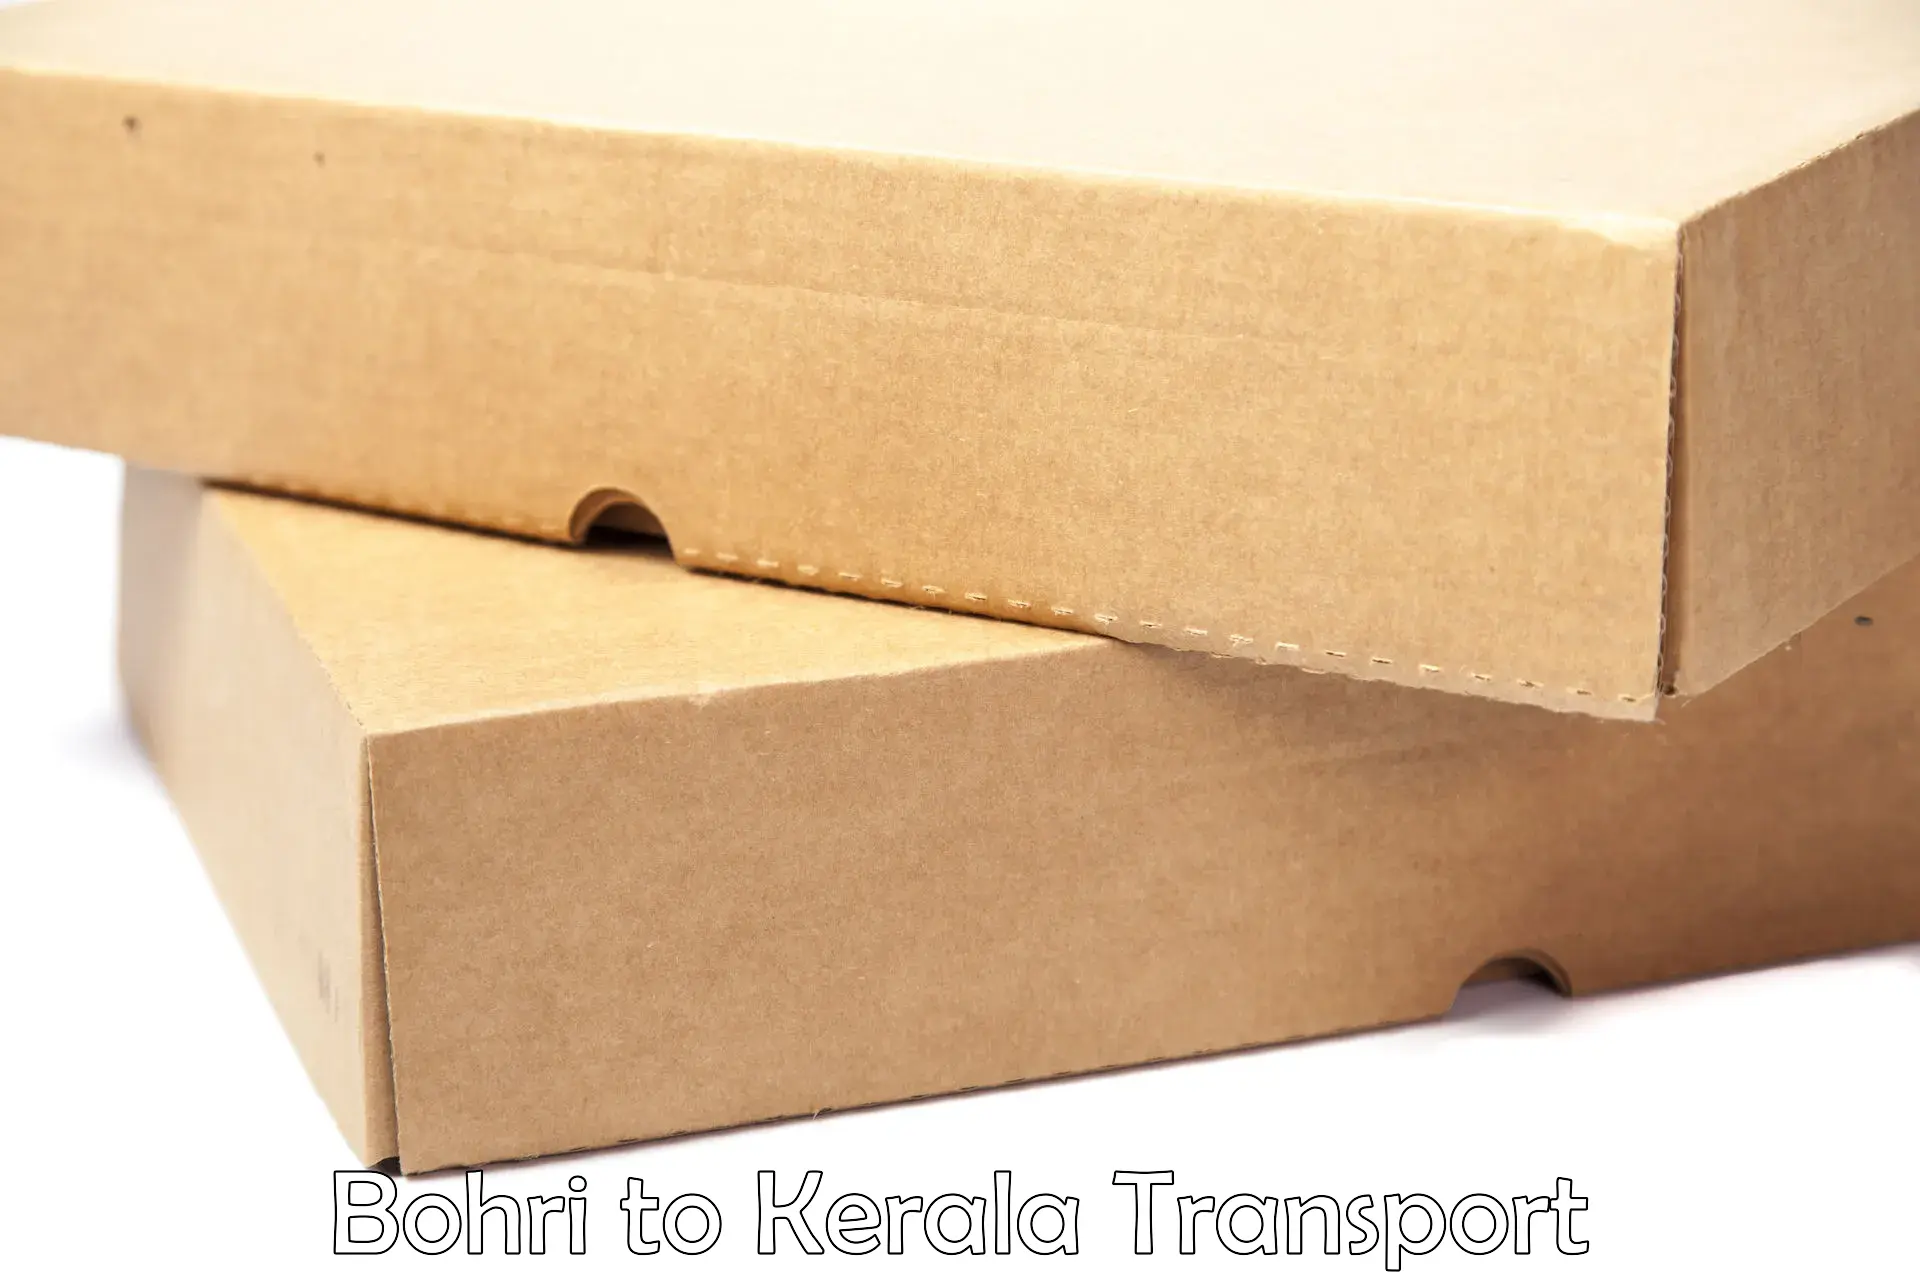 Delivery service Bohri to Kerala